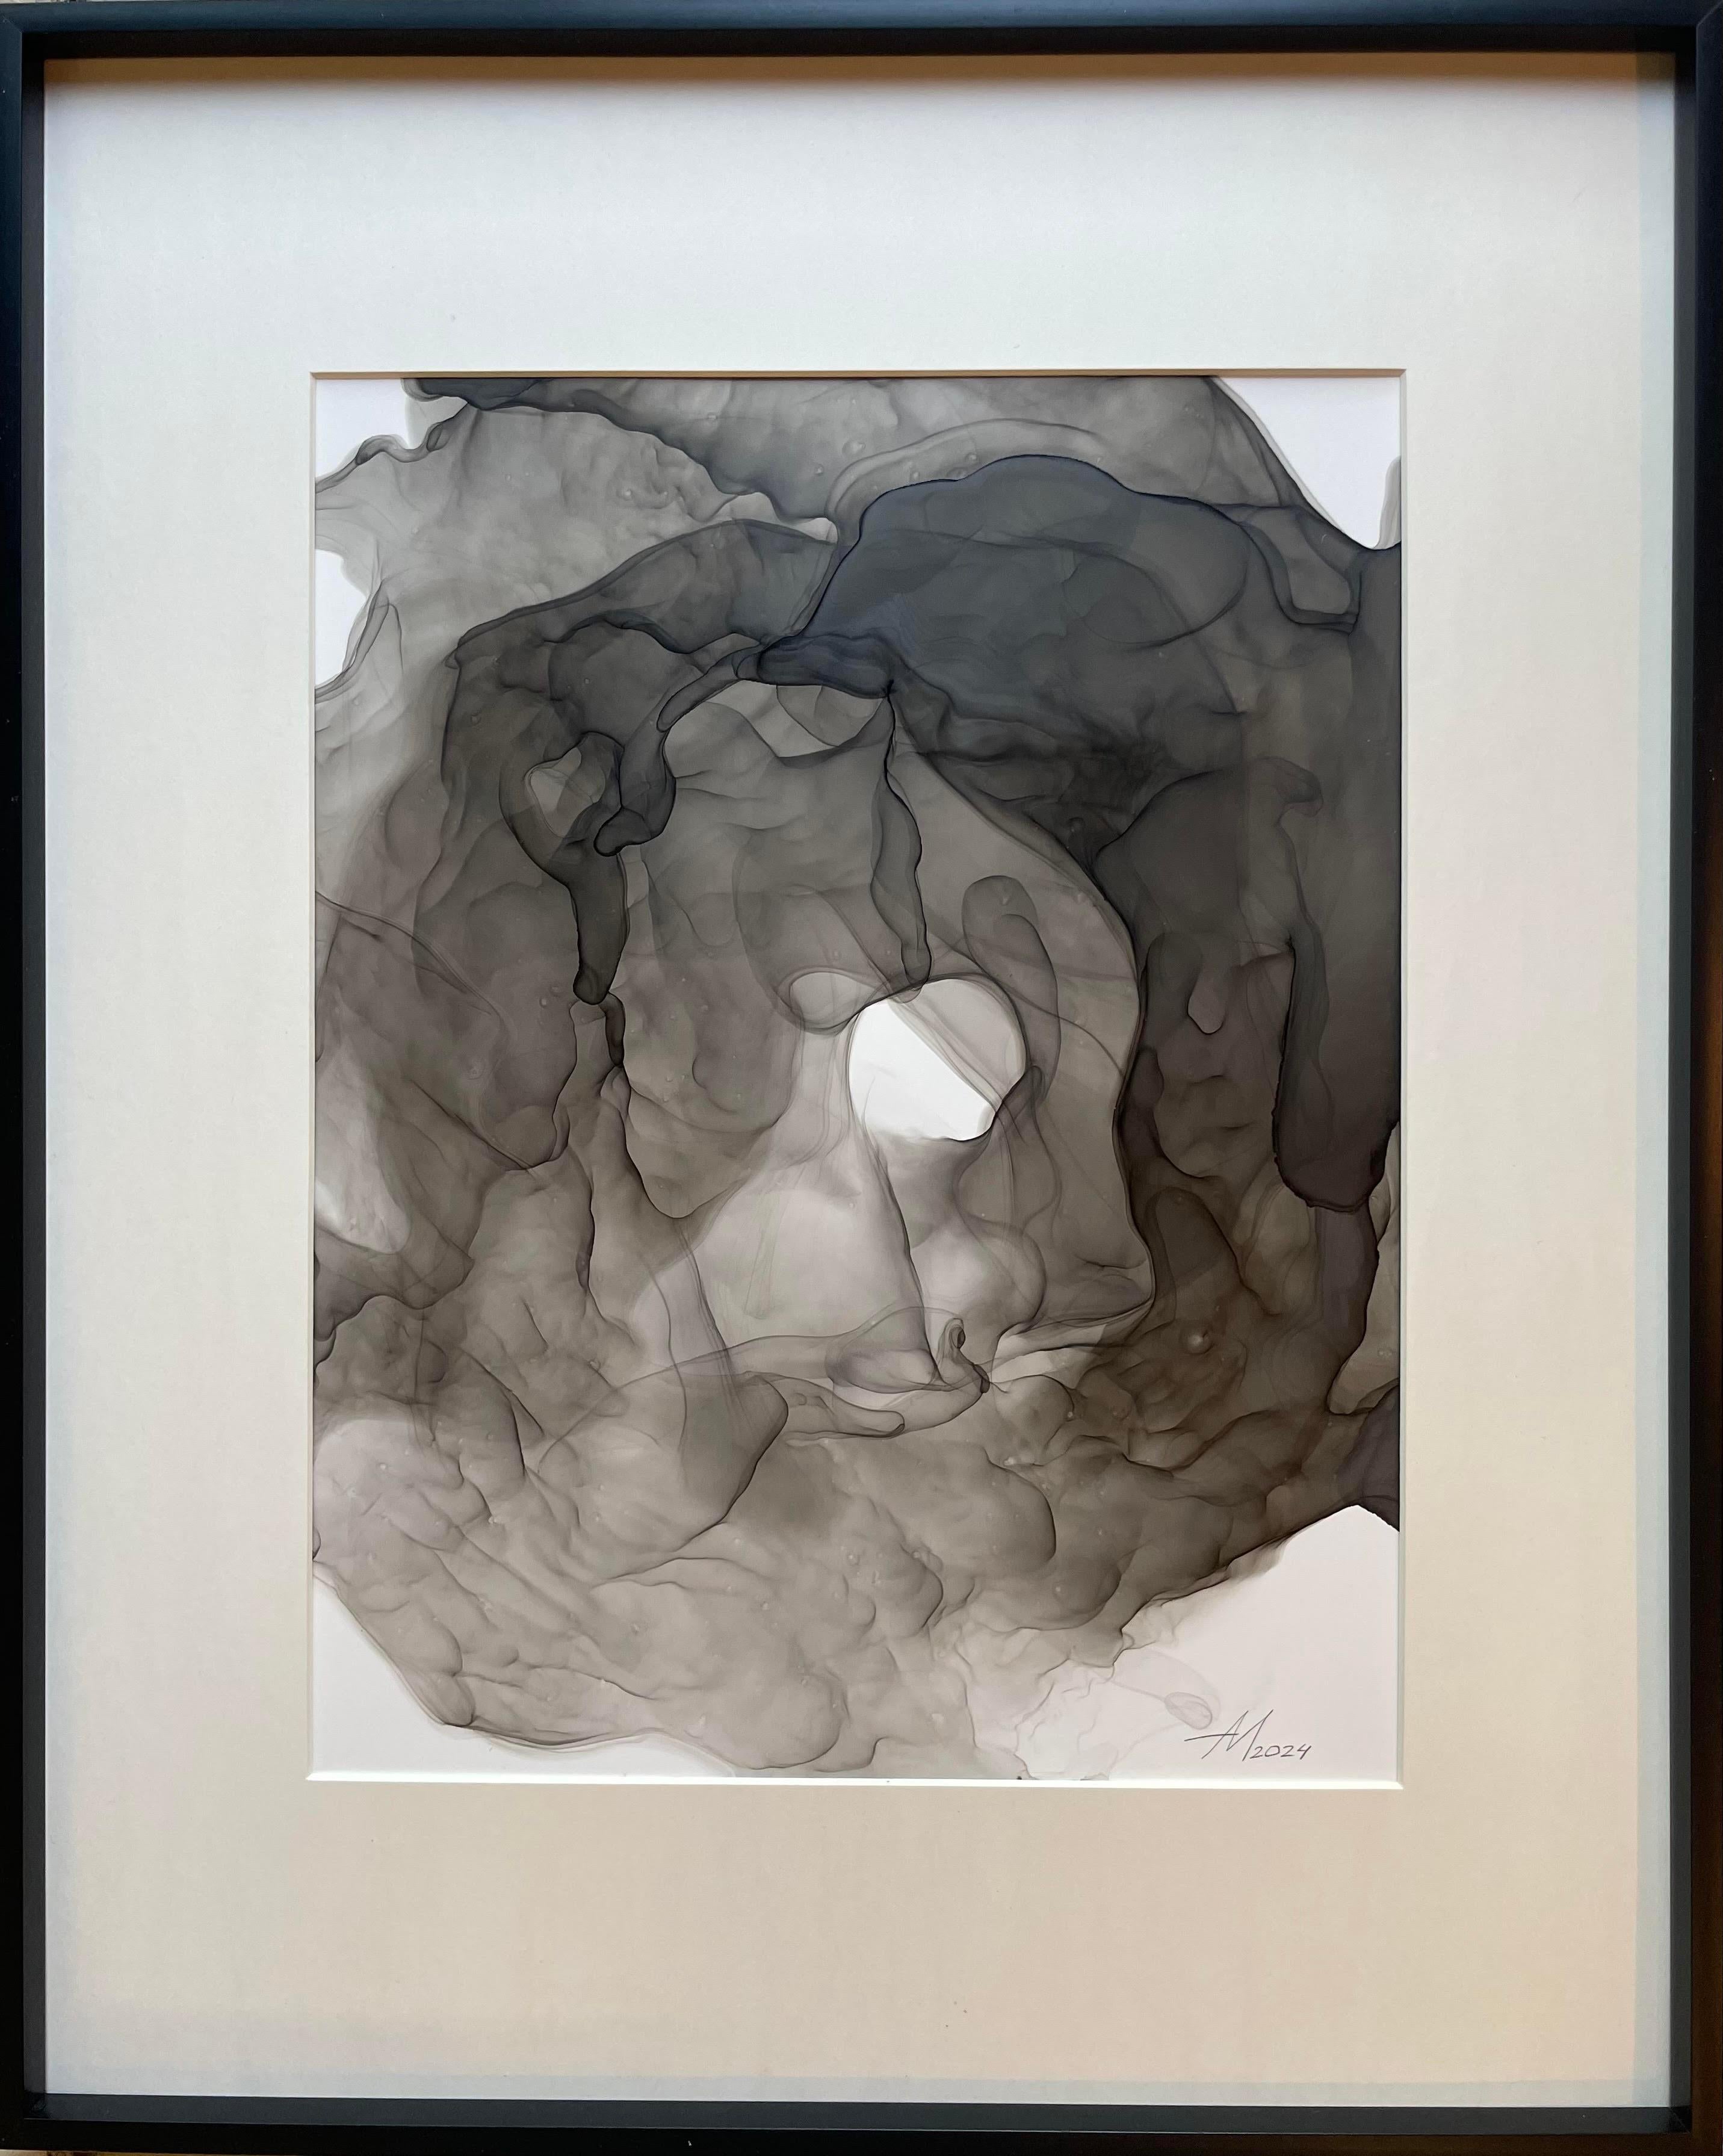 Ephemeral composition - abstraktes Gemälde, in schwarzer, grauer Farbe gemalt